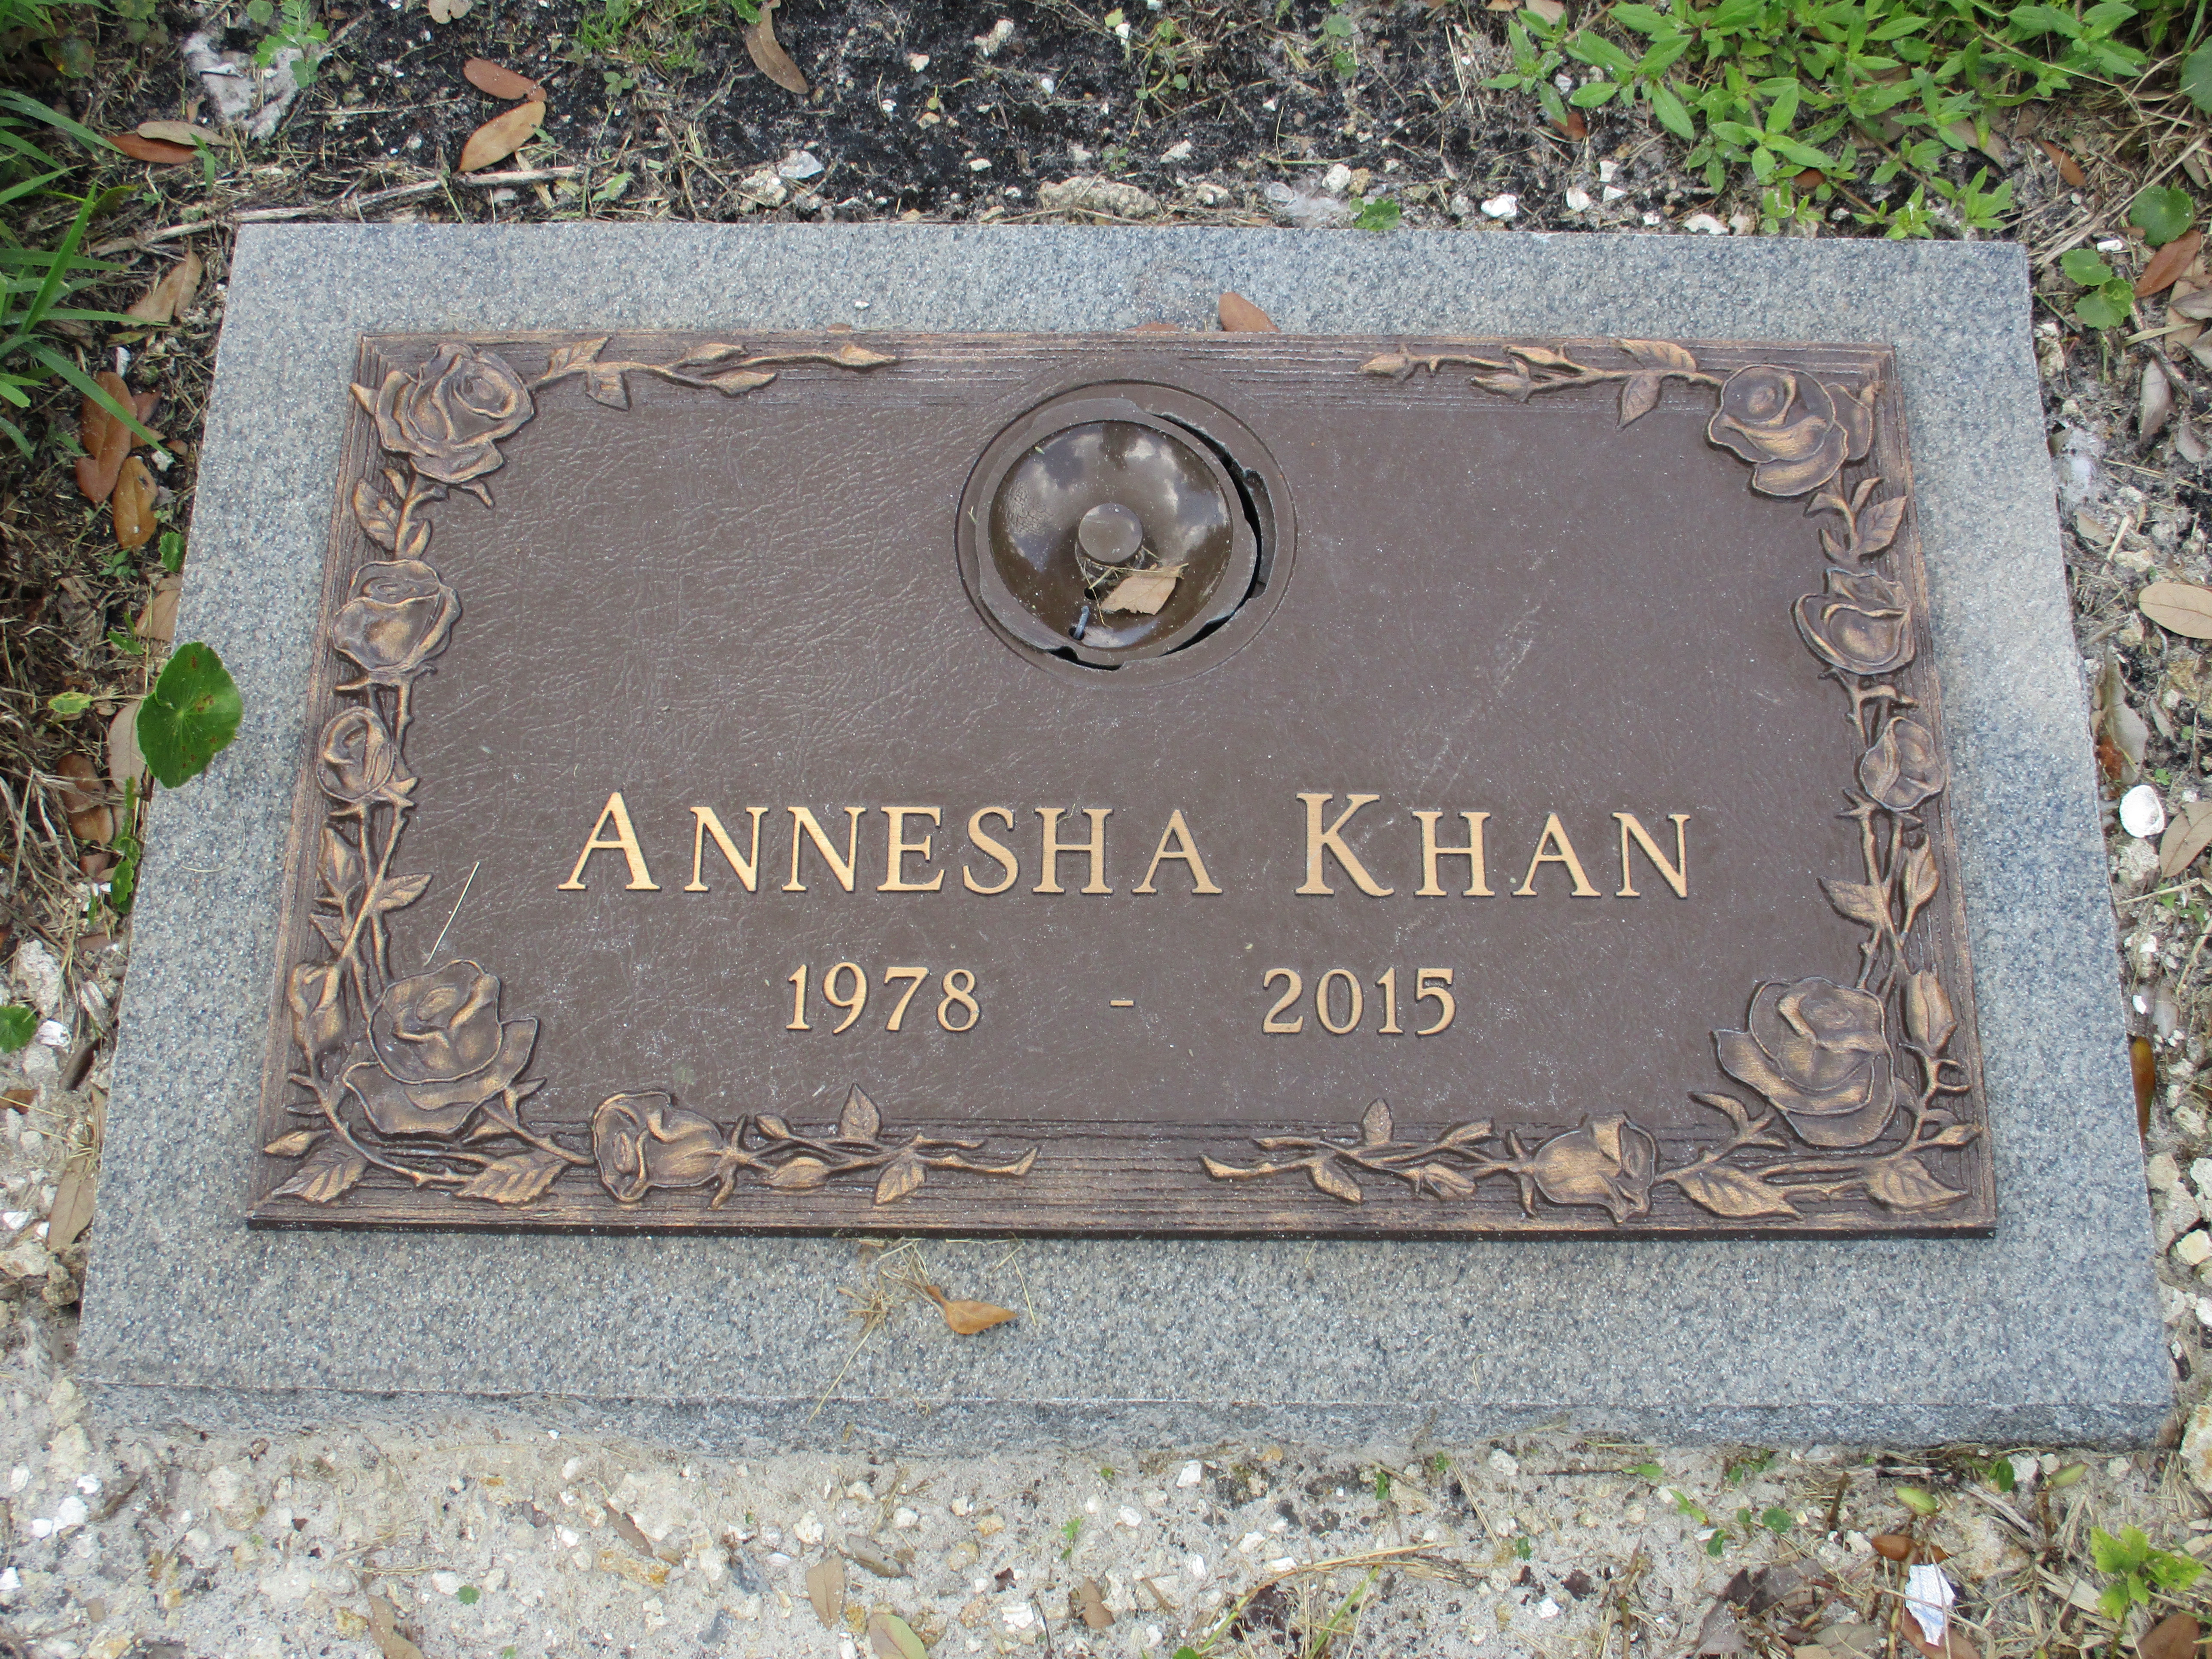 Annesha Khan